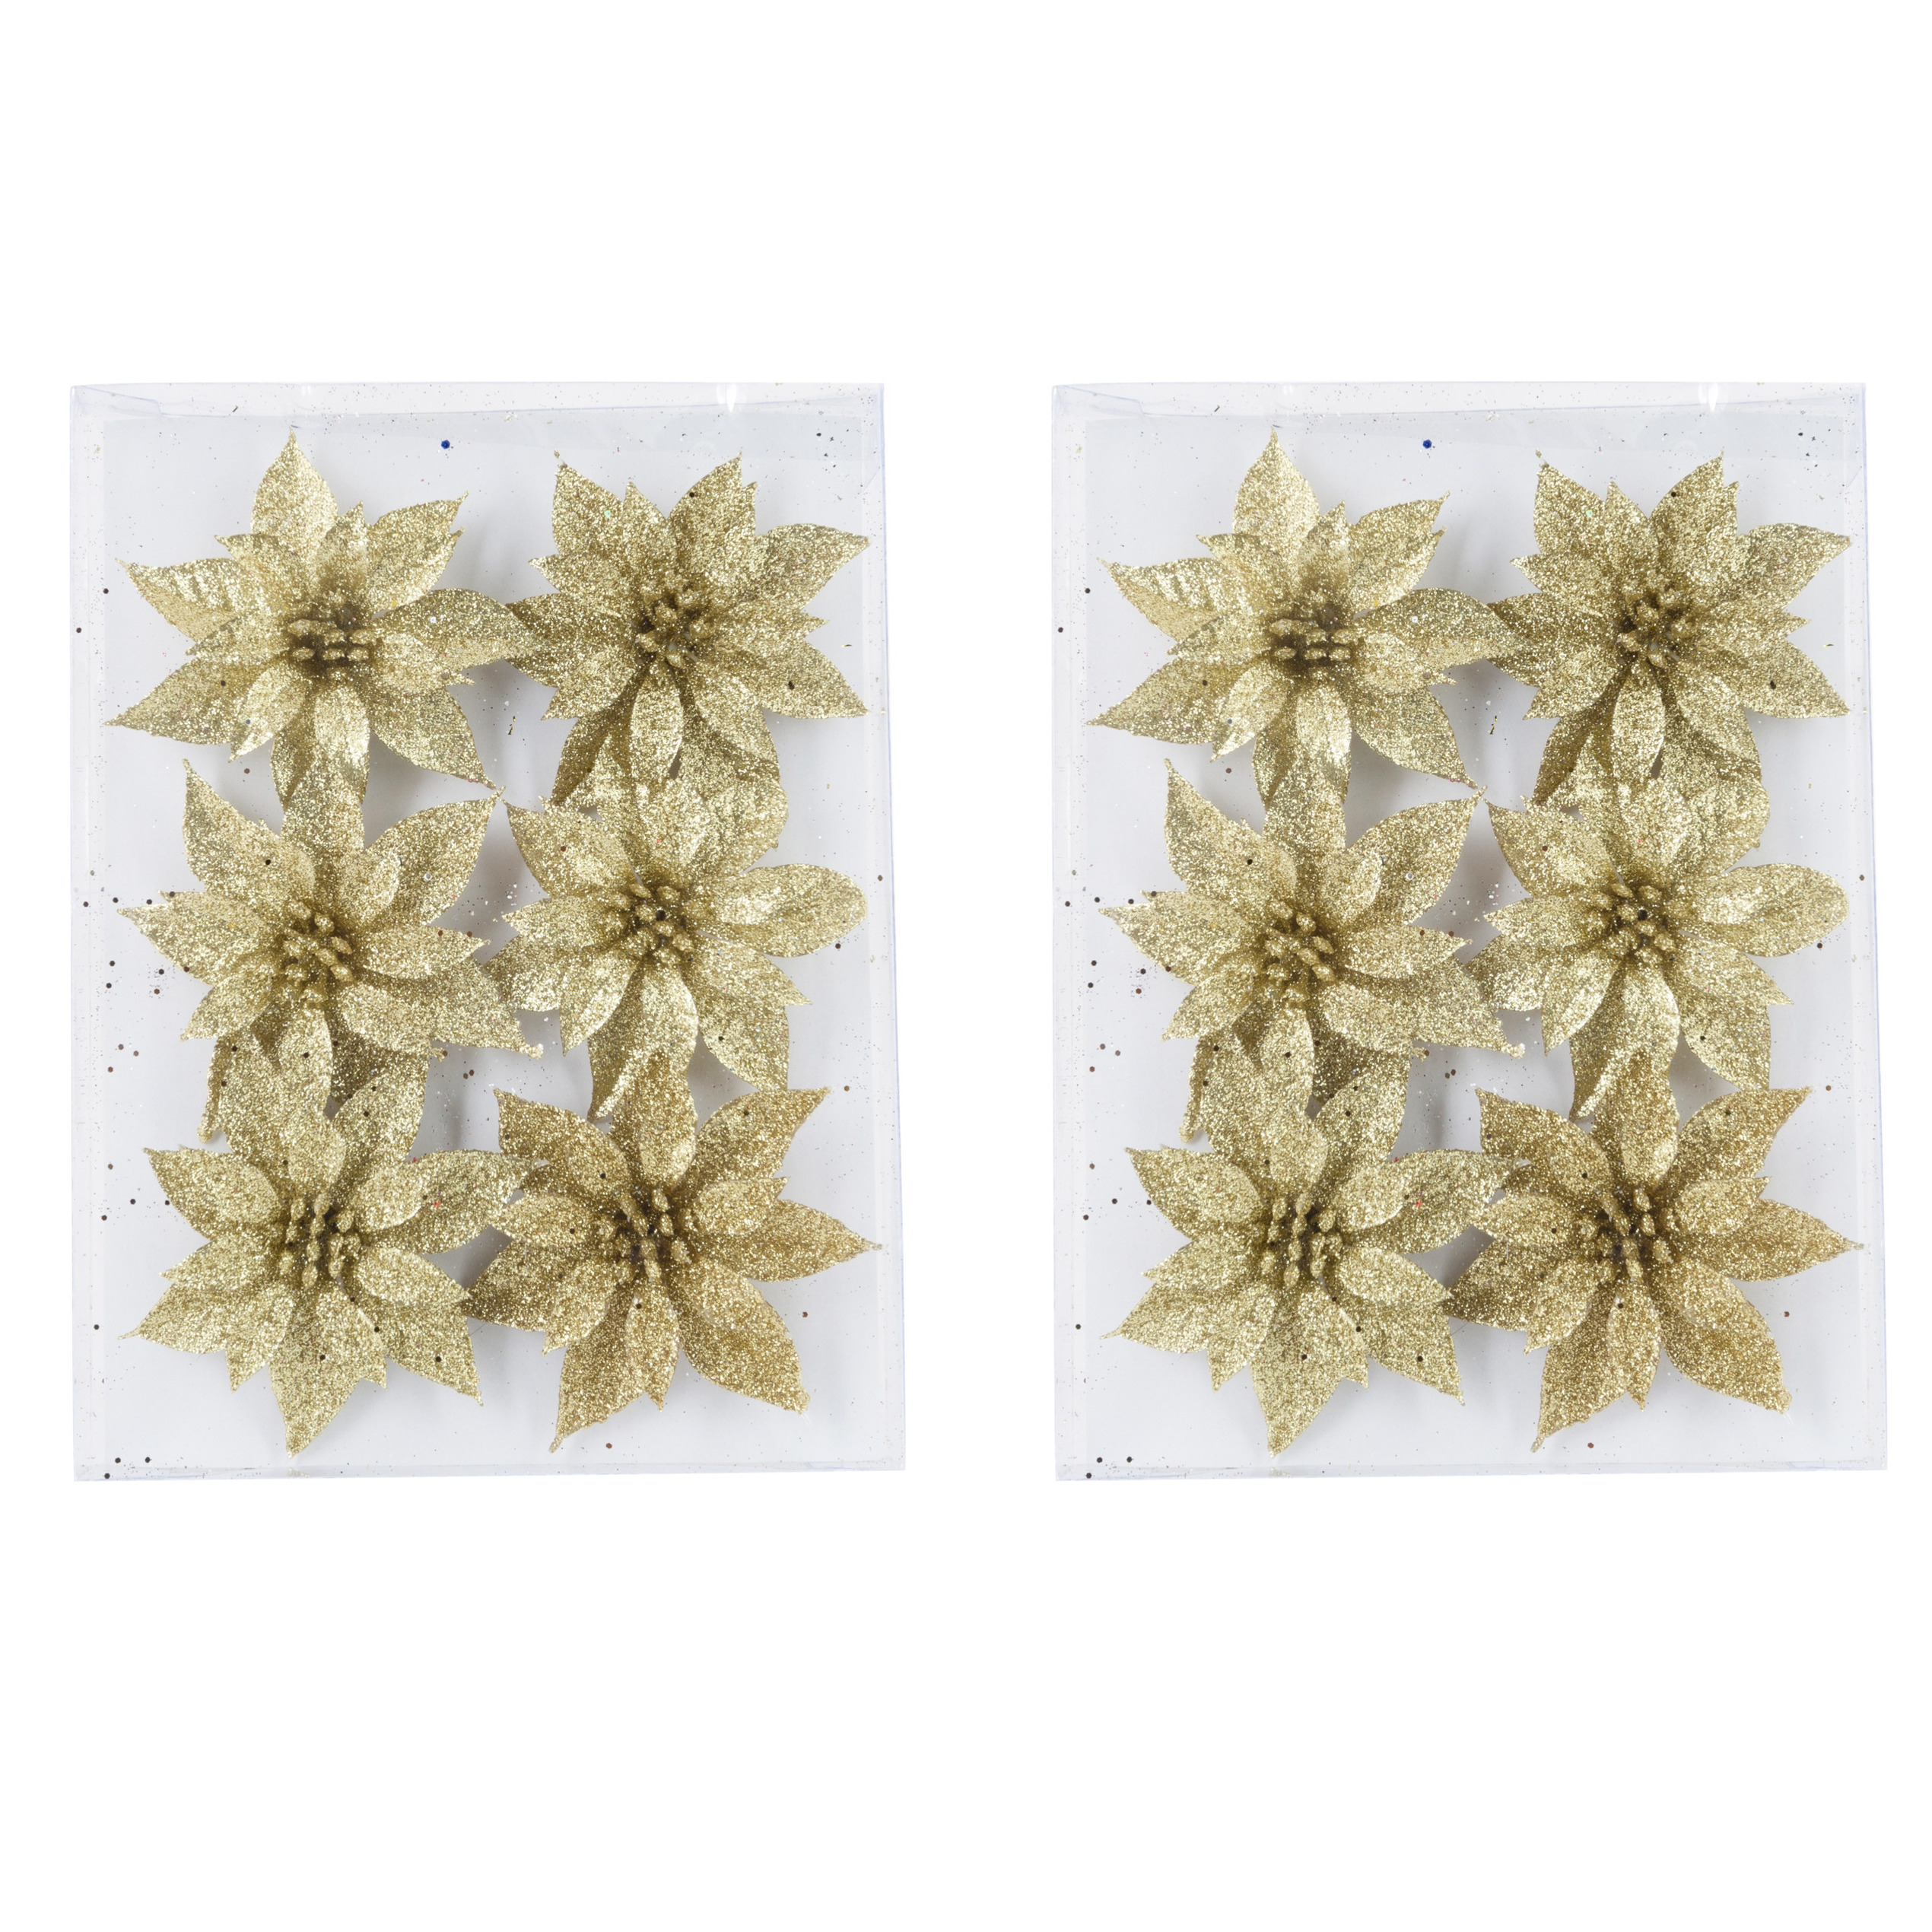 24x stuks decoratie bloemen rozen goud glitter op ijzerdraad 8 cm